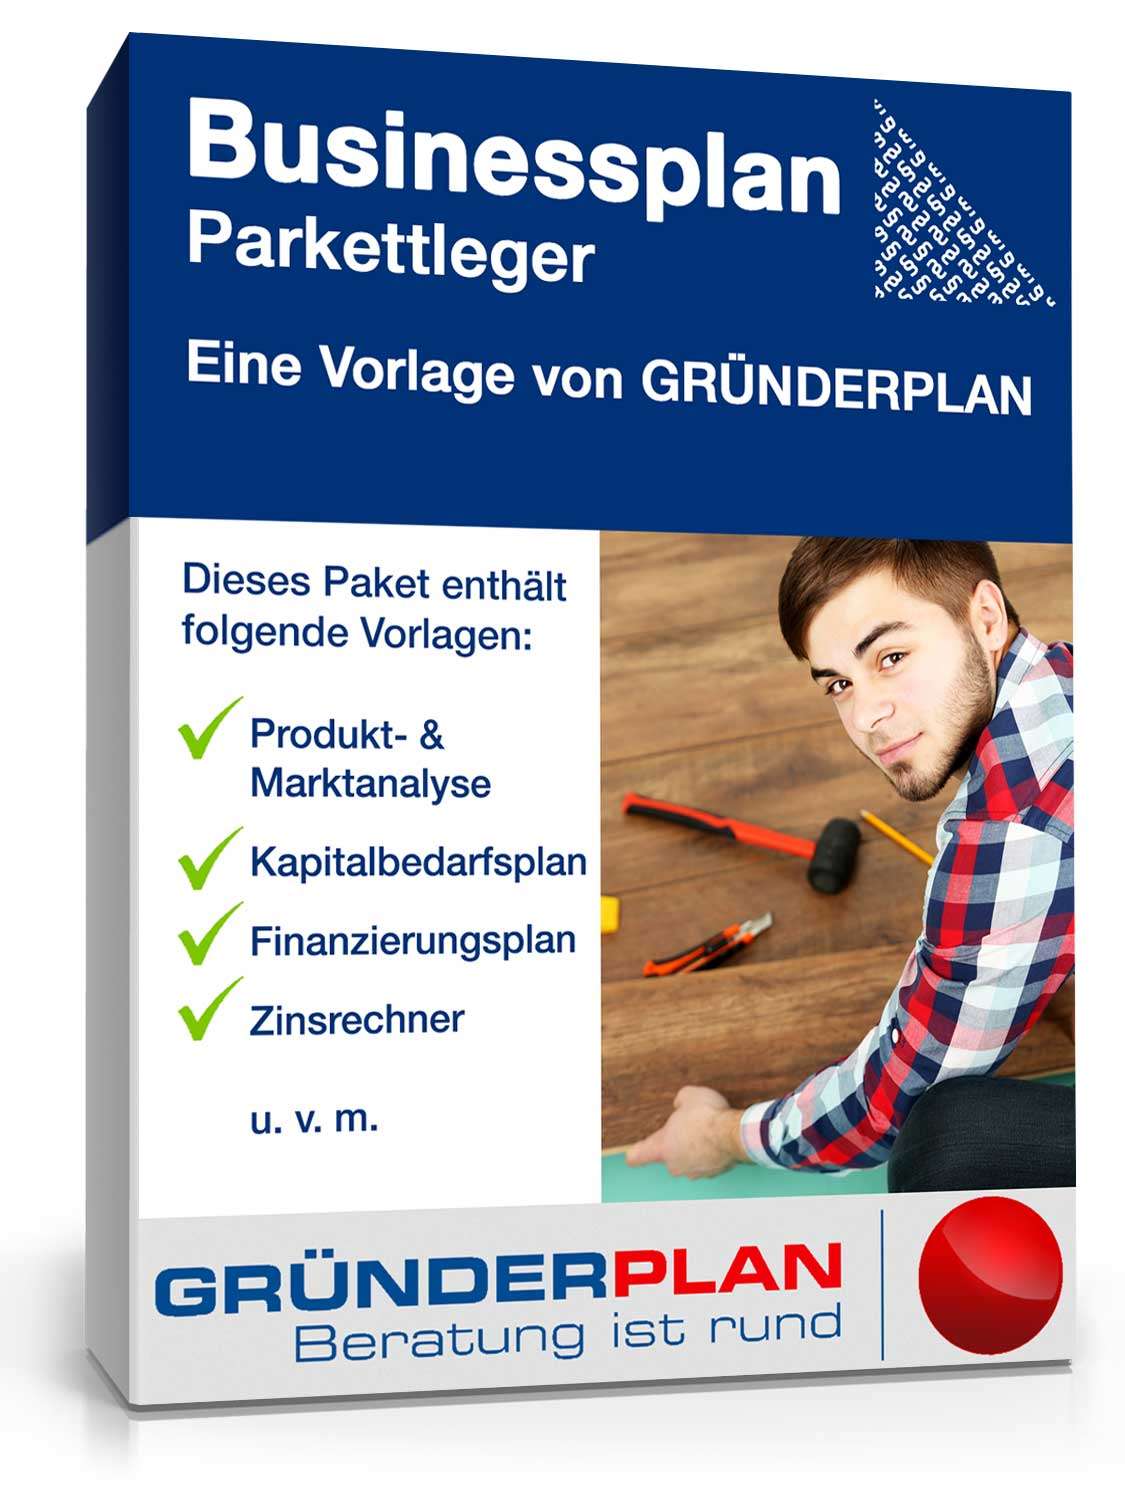 Hauptbild des Produkts: Businessplan Parkettleger von Gründerplan